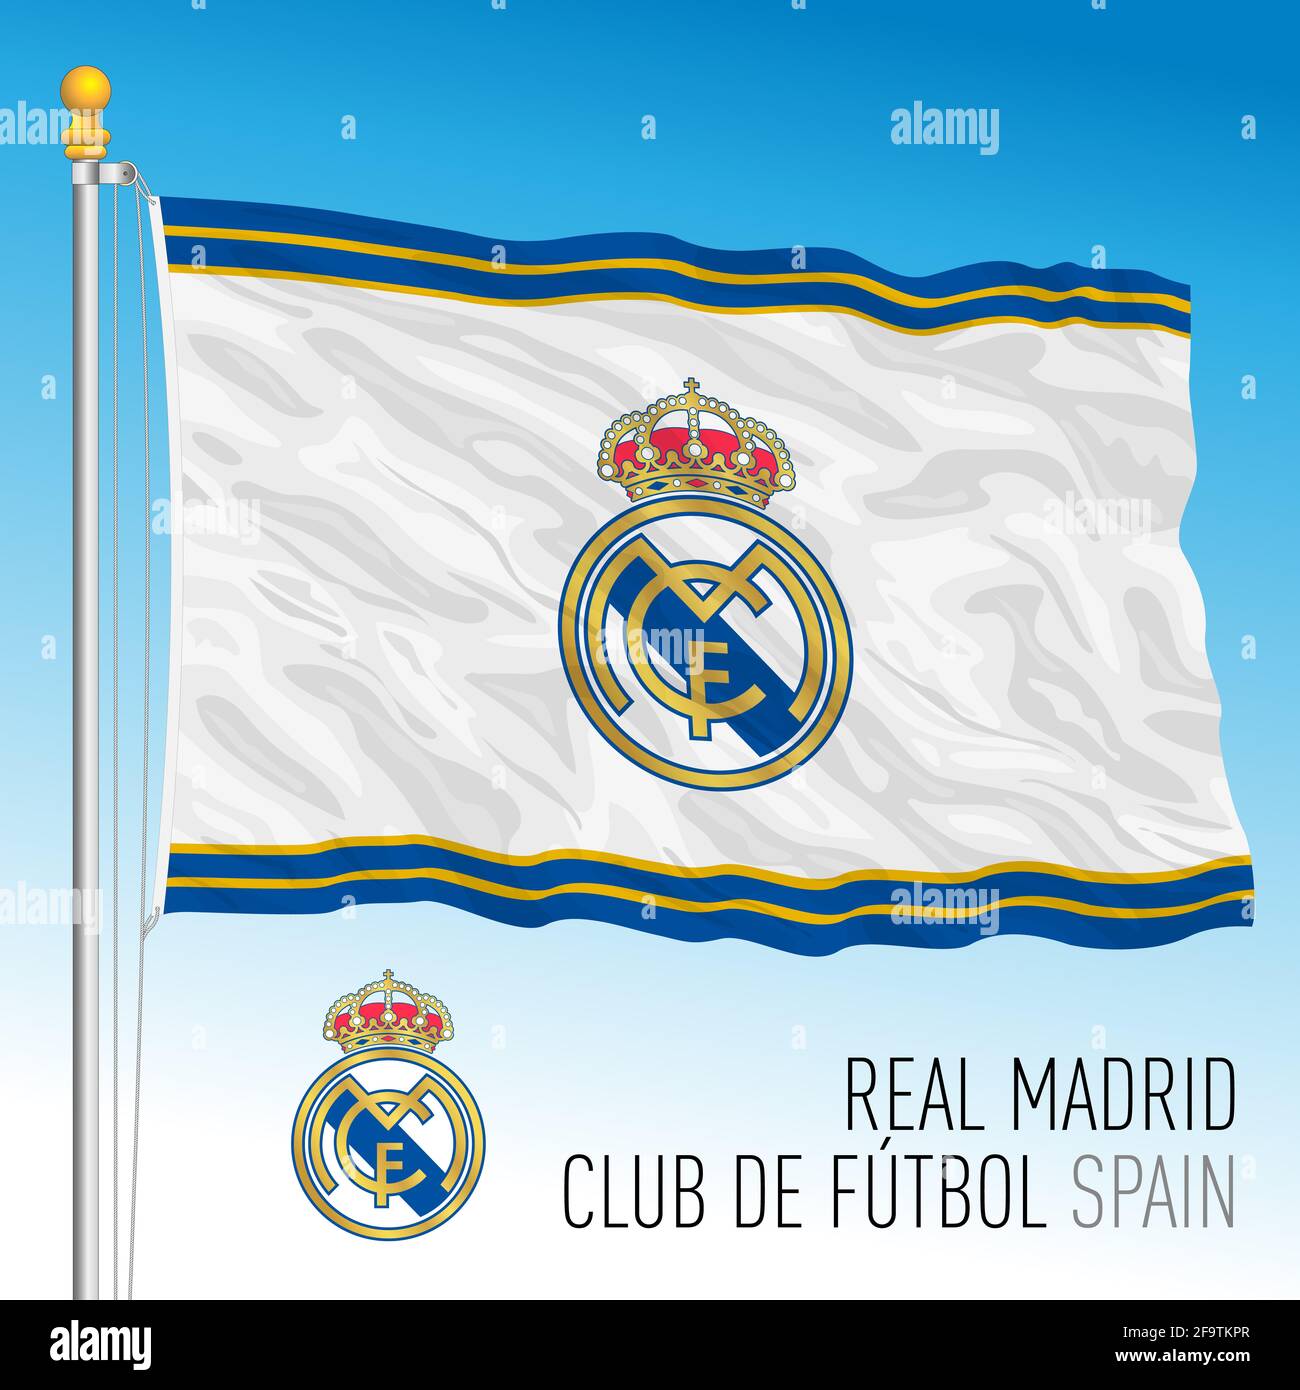 Bandera del Real Madrid Club de Fútbol mod. 2 